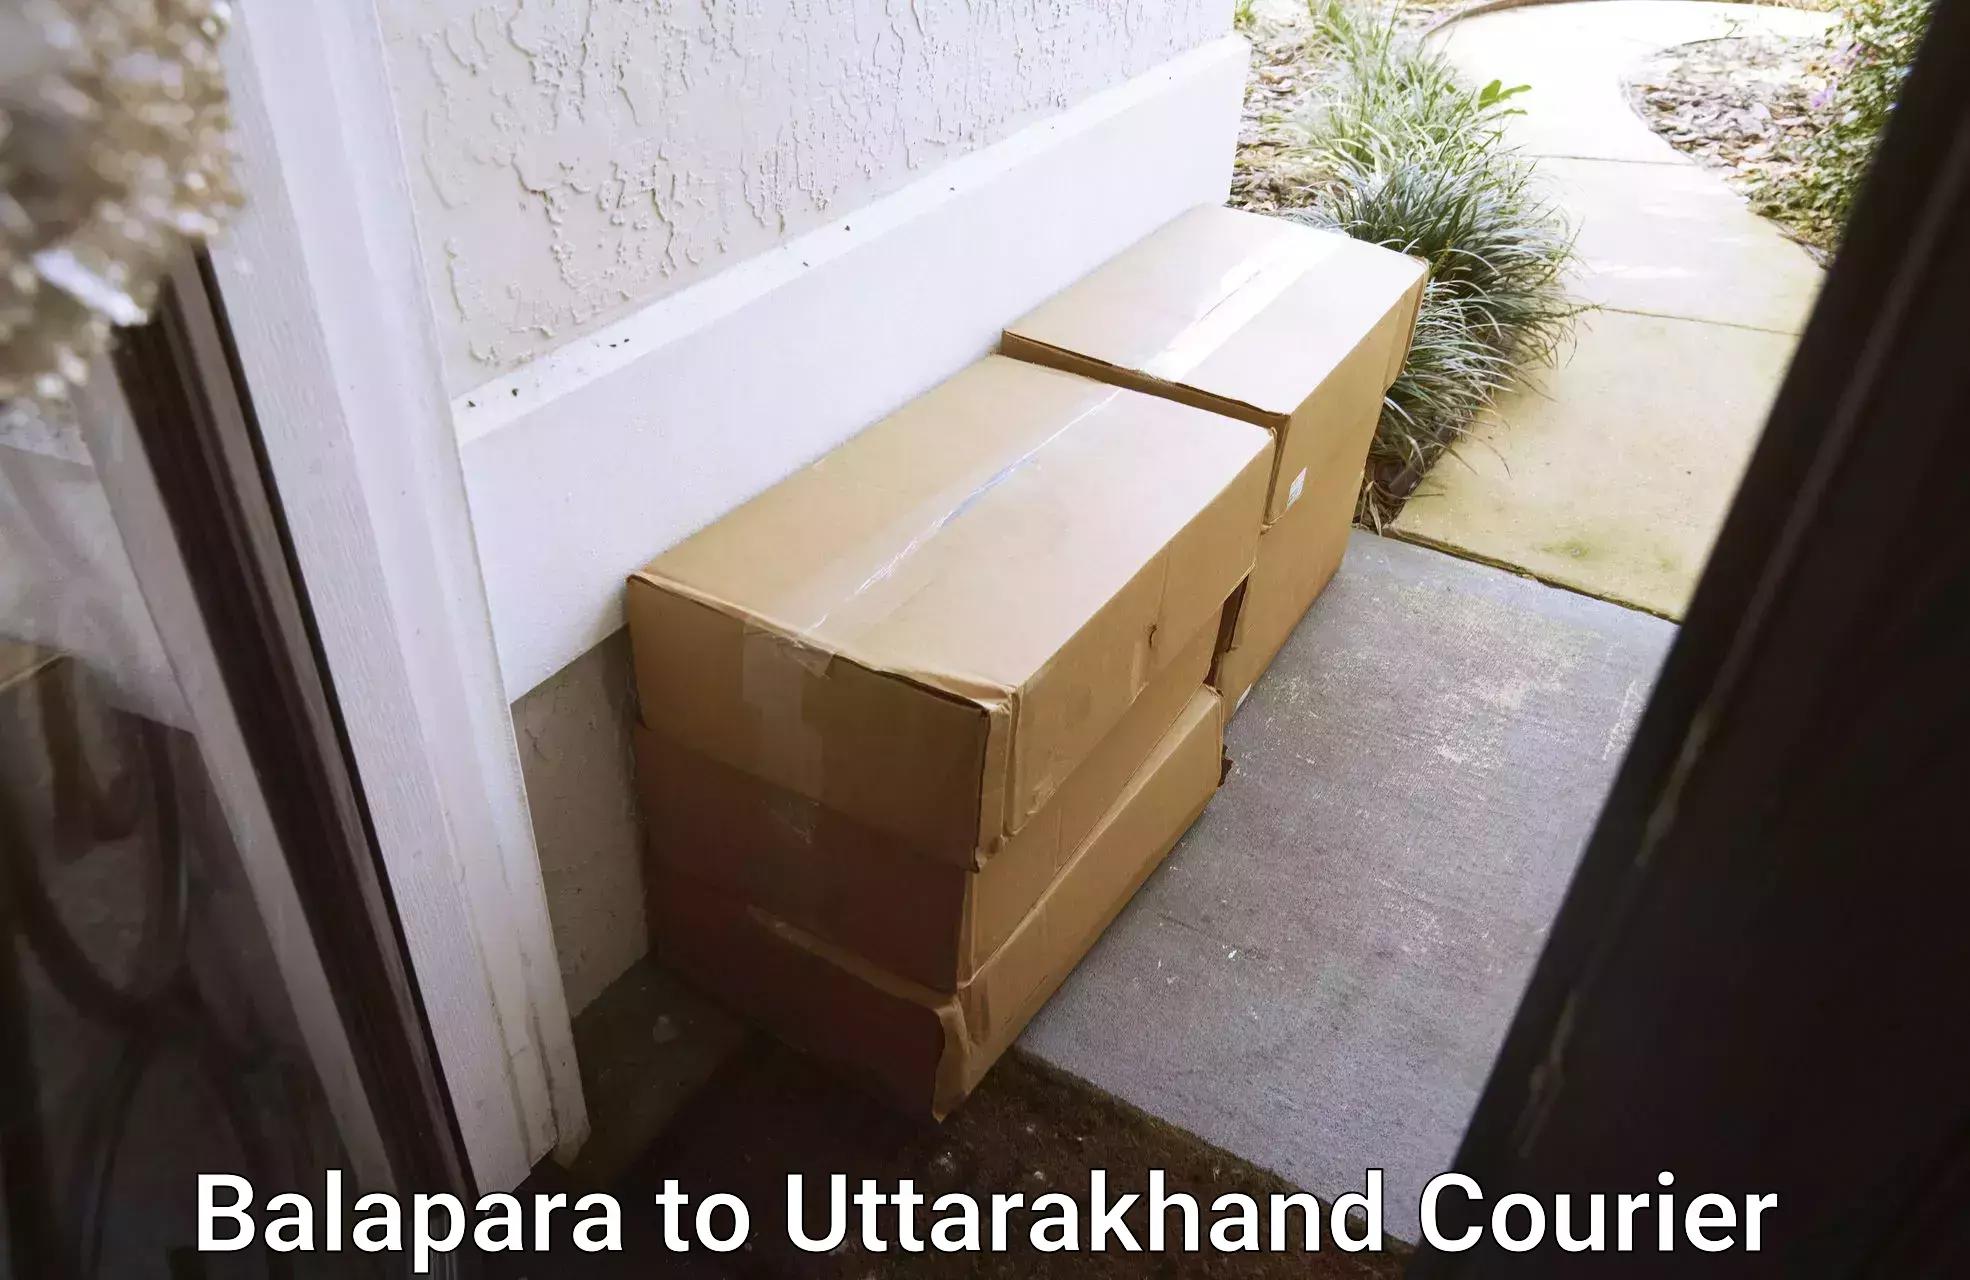 Weekend courier service Balapara to Bageshwar